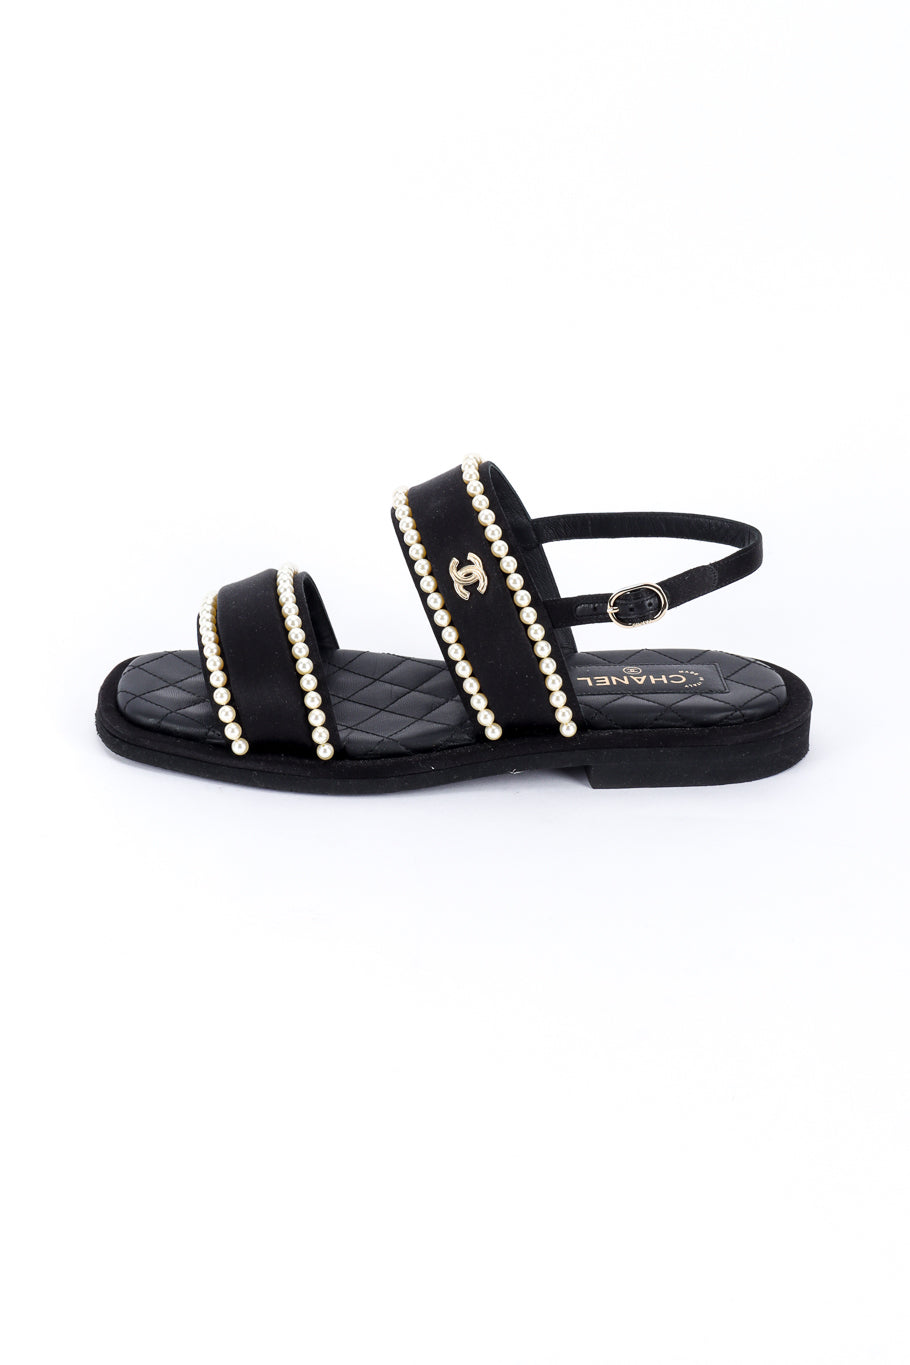 Chanel CC Satin & Pearl Sandals left shoe outer side @recess la